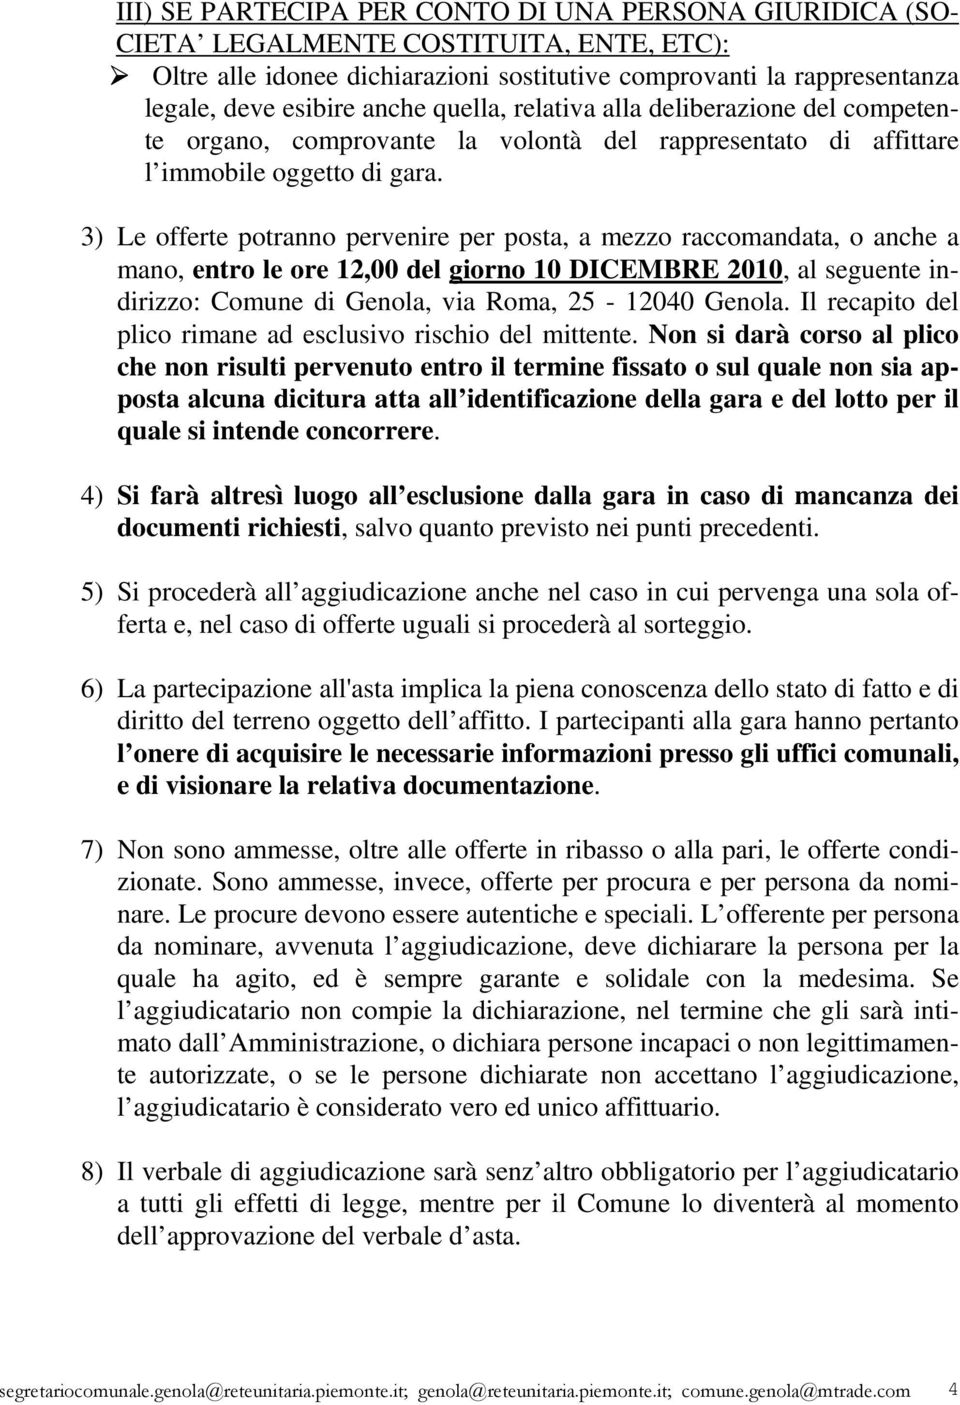 3) Le offerte potranno pervenire per posta, a mezzo raccomandata, o anche a mano, entro le ore 12,00 del giorno 10 DICEMBRE 2010, al seguente indirizzo: Comune di Genola, via Roma, 25-12040 Genola.